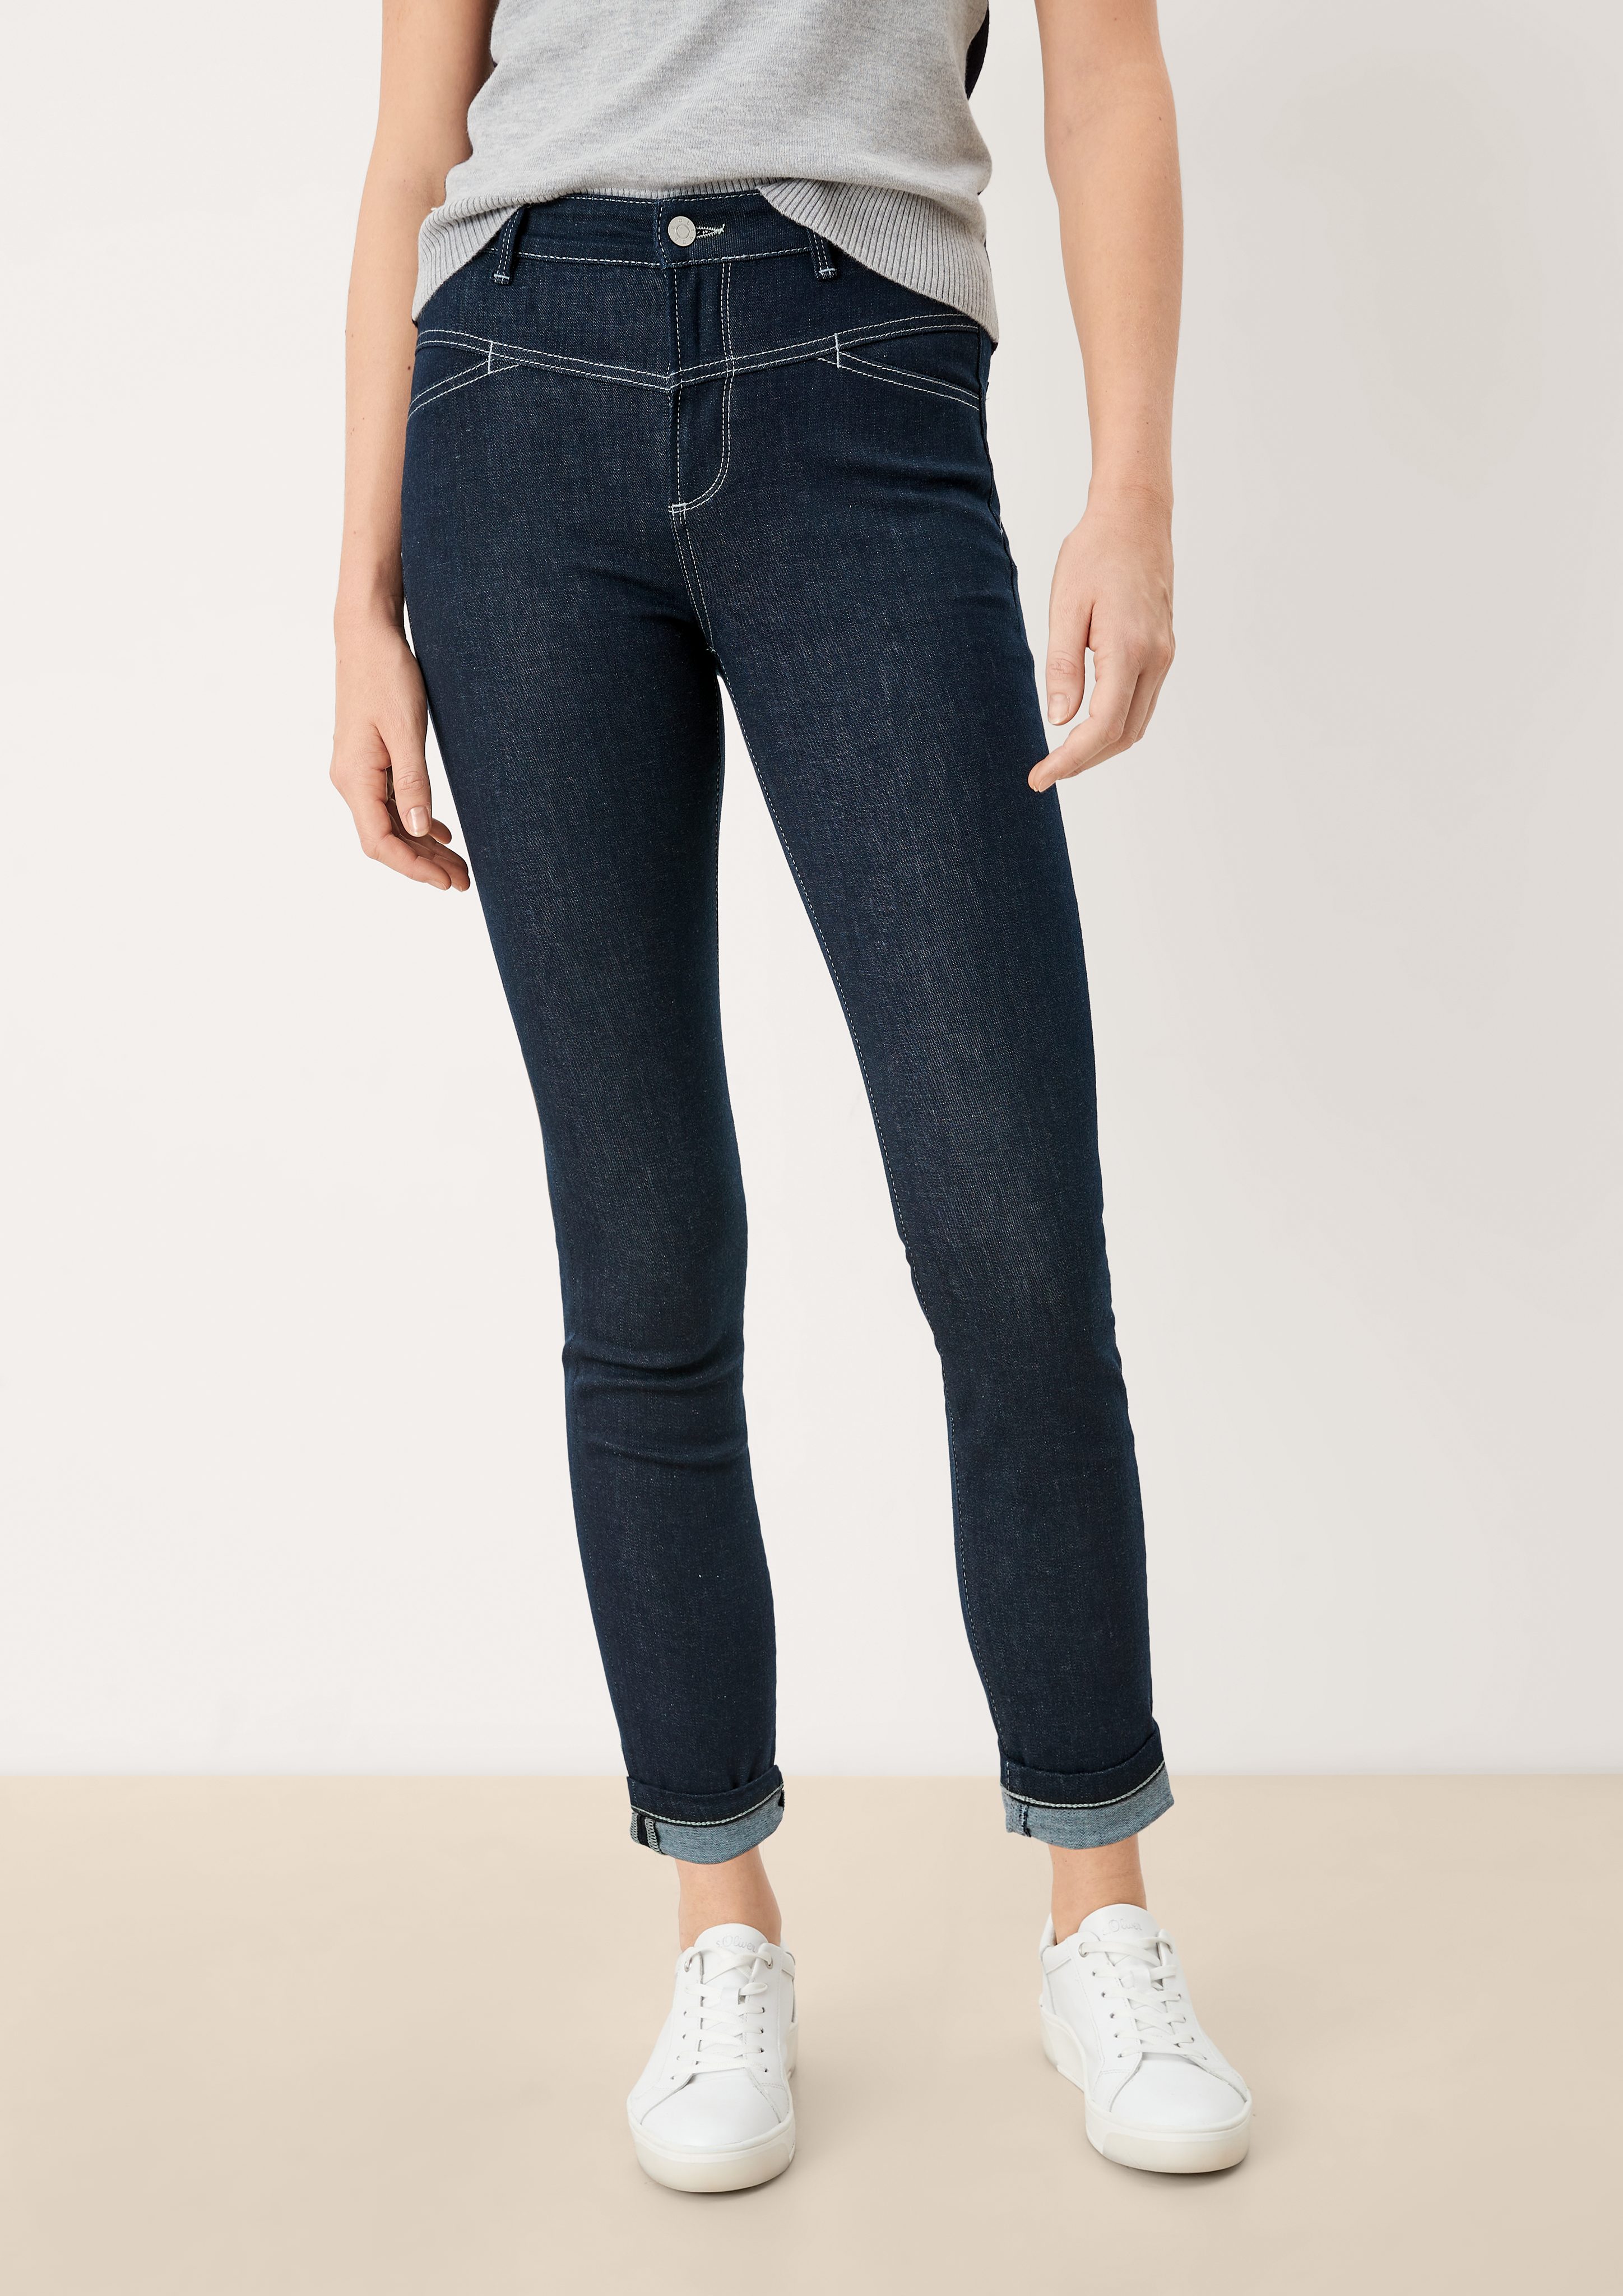 s.Oliver 5-Pocket-Jeans Skinny: Waschung Sattelbund Jeans mit